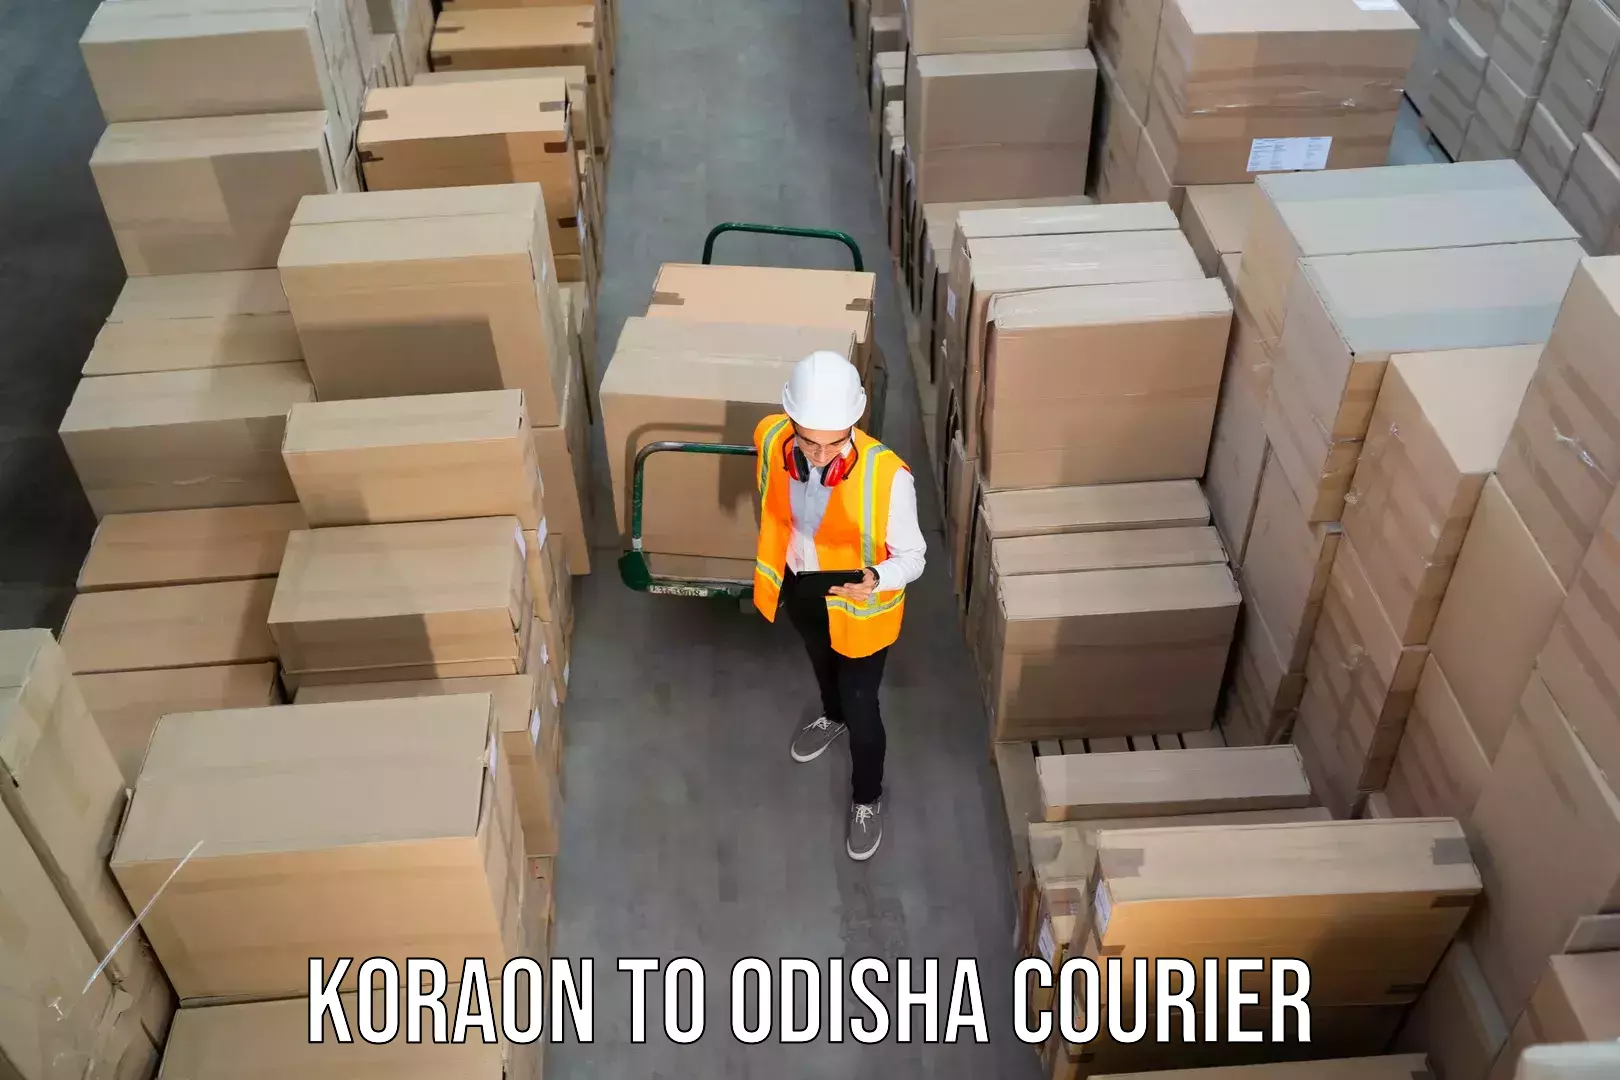 Express courier facilities Koraon to Morada